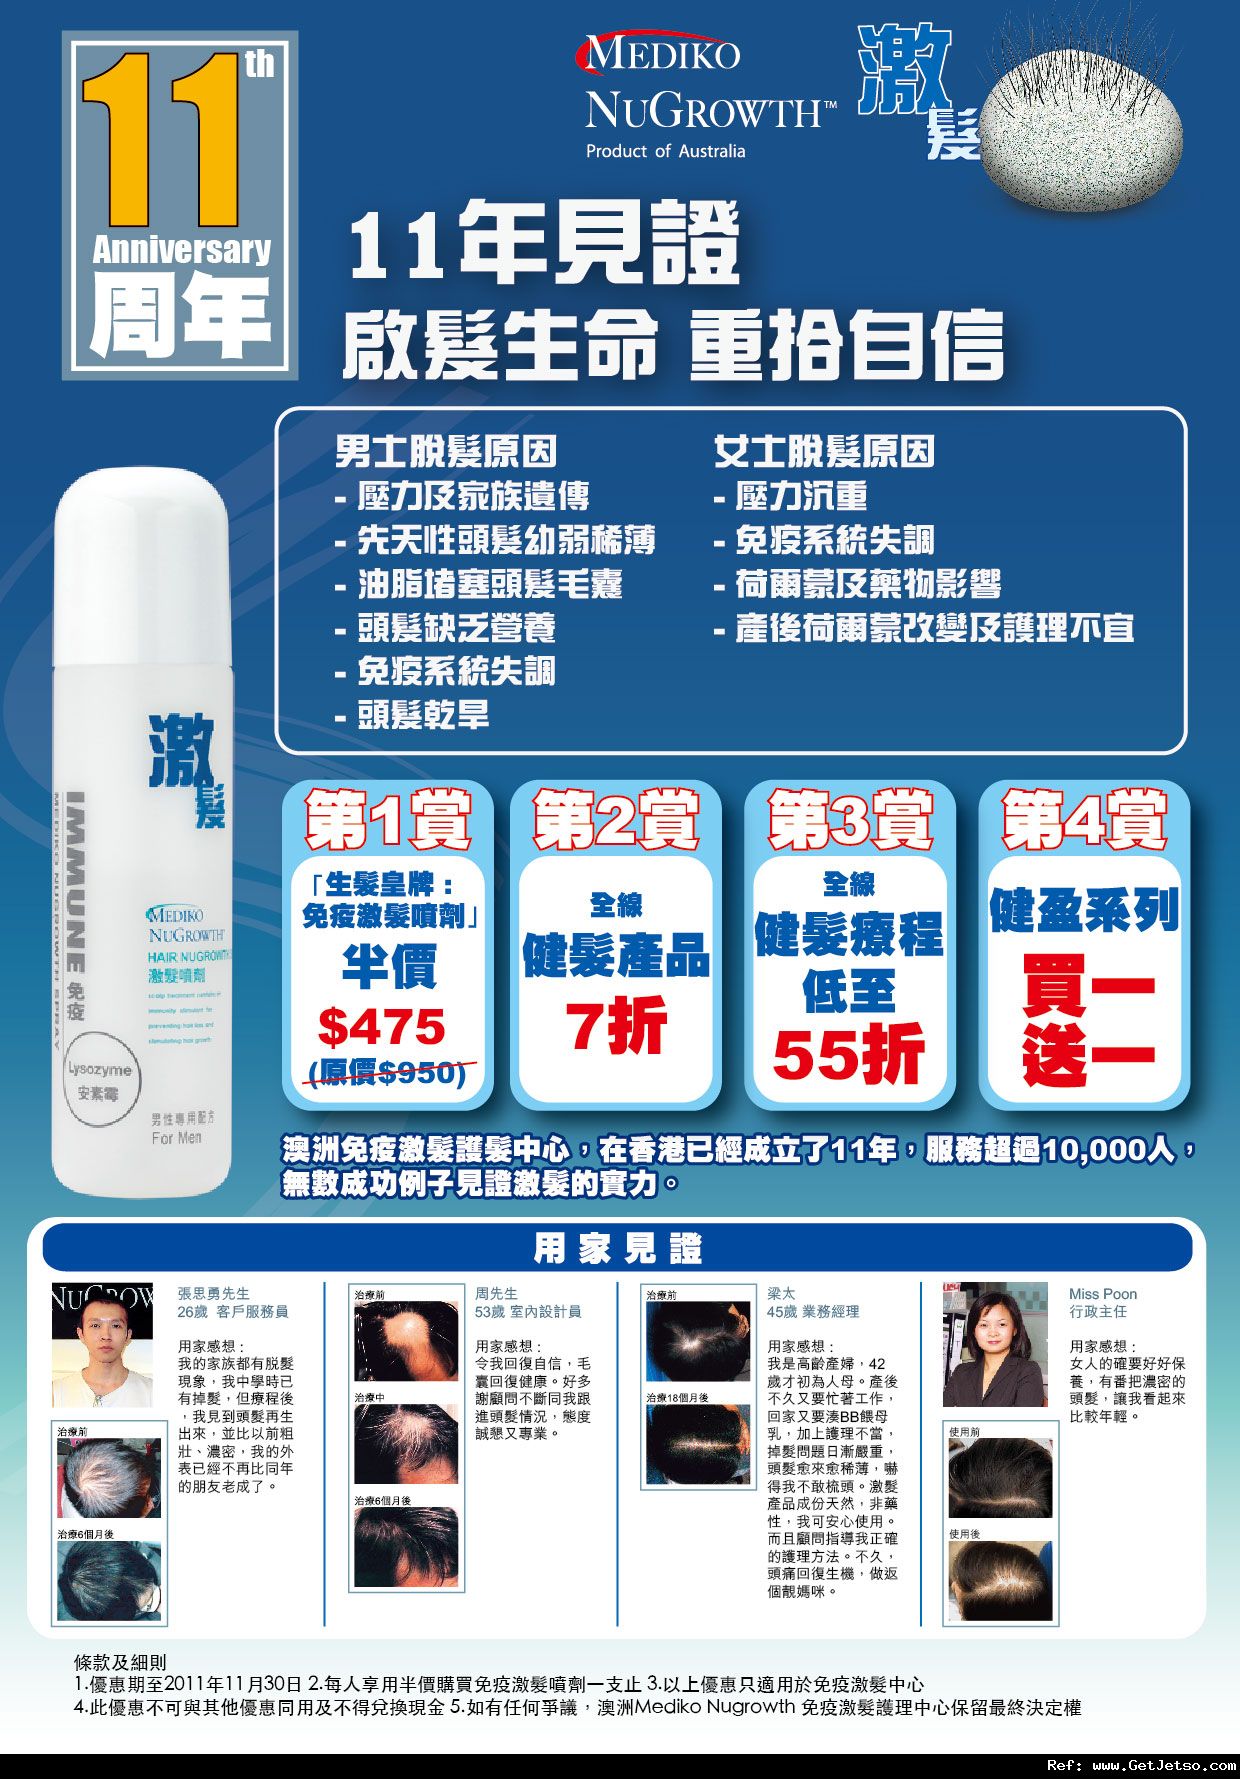 Mediko 生髮噴劑半價護髮產品買1送1優惠(至11年11月30日)圖片1